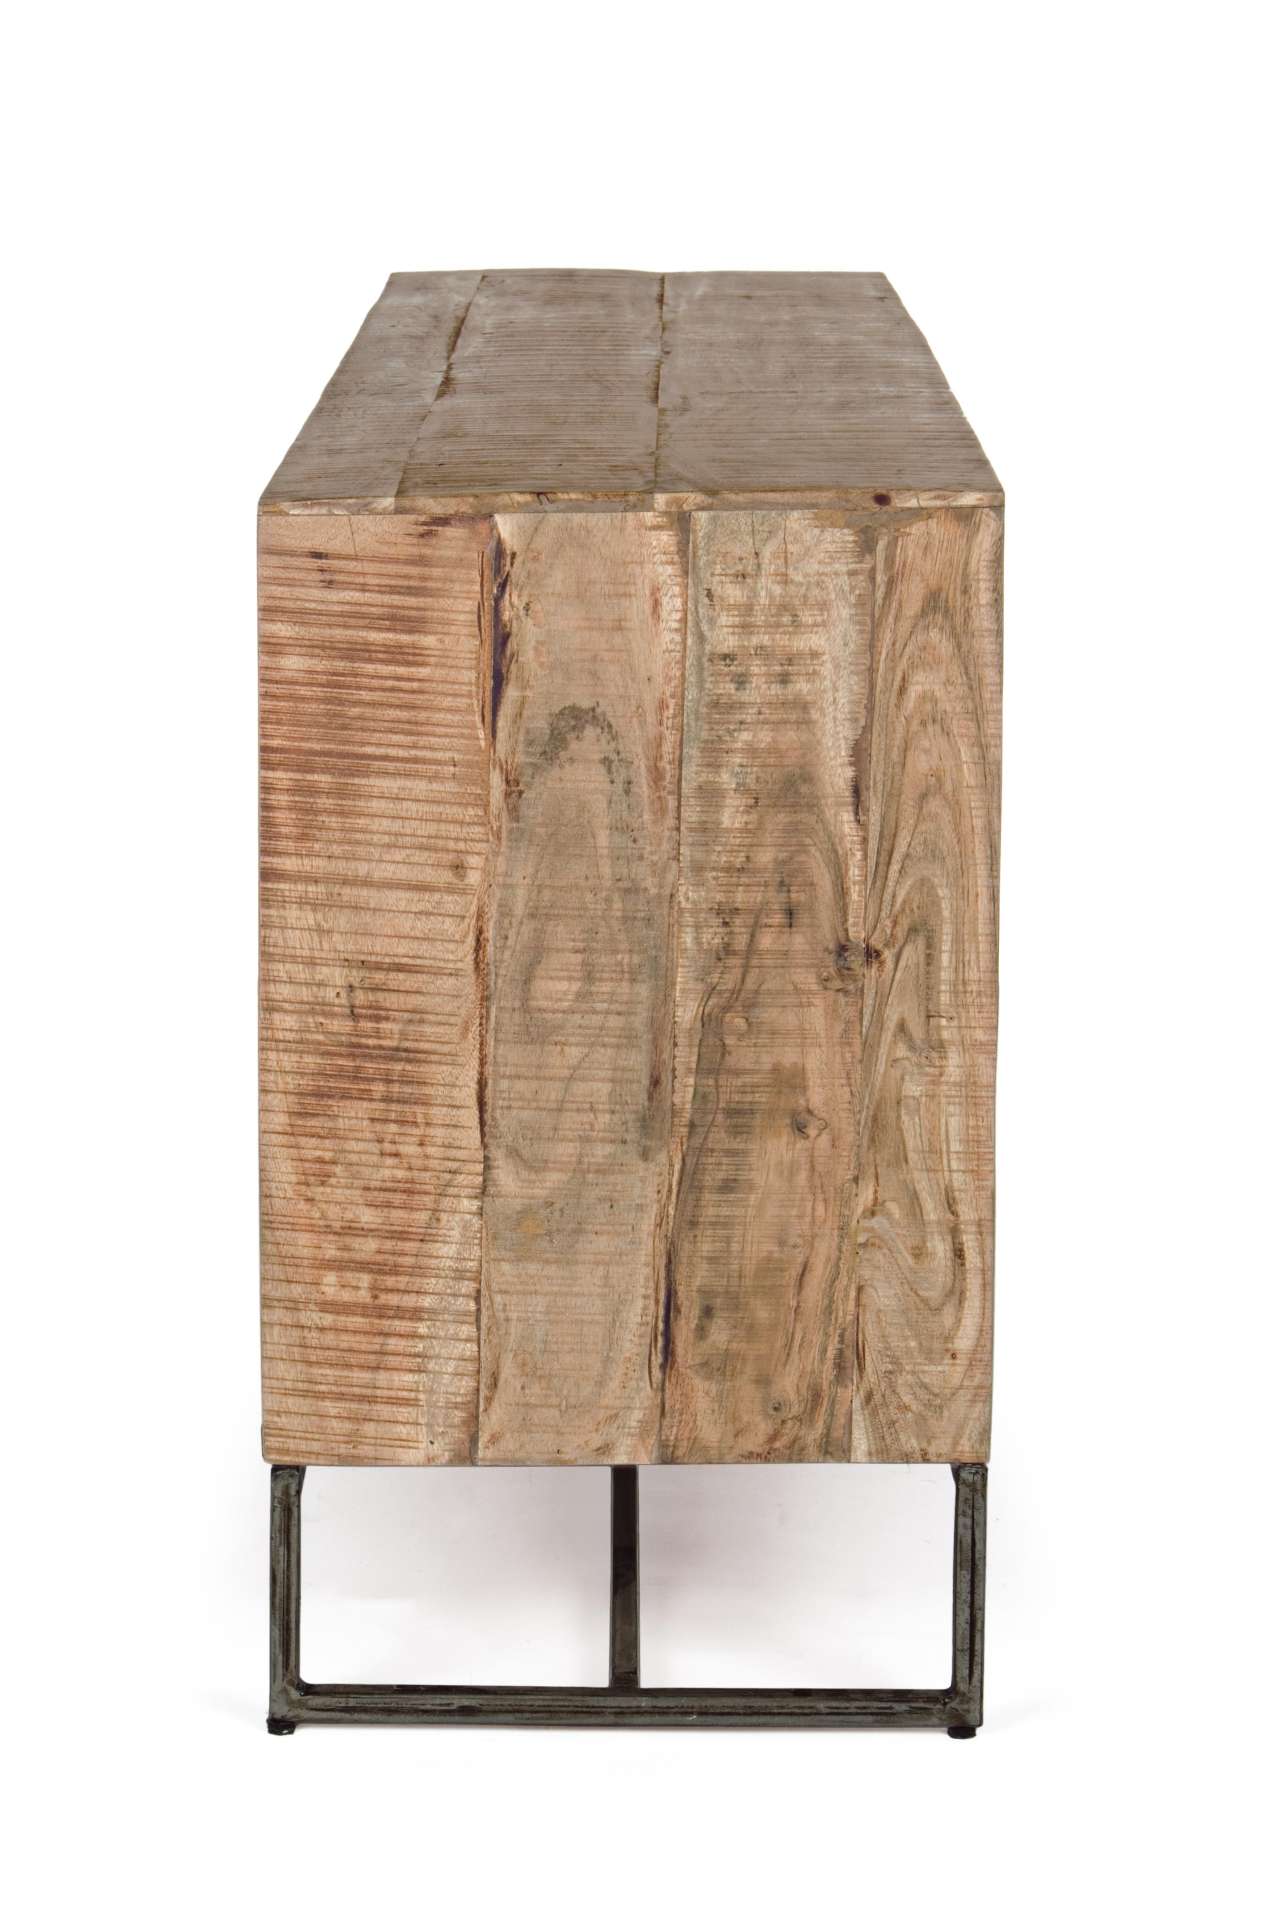 Das Sideboard Elmer überzeugt mit seinem industriellem Design. Gefertigt wurde es aus Akazien-Holz, welches einen natürlichen Farbton besitzt. Das Gestell ist aus Metall und hat eine schwarze Farbe. Das Sideboard verfügt über zwei Türen und drei Schublade